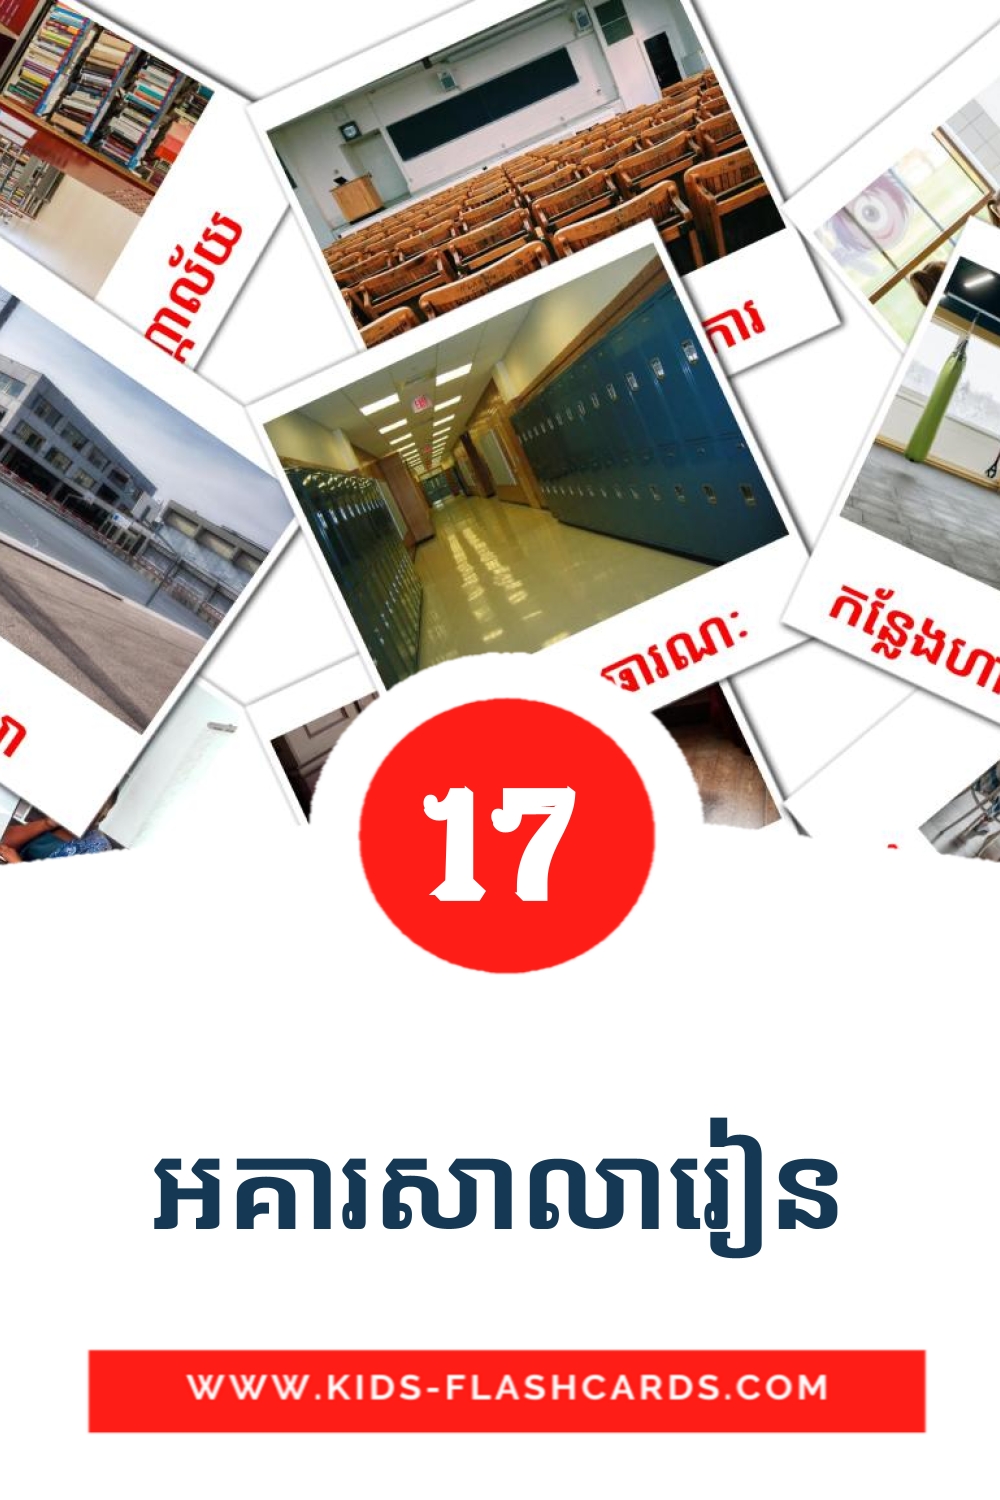 17 tarjetas didacticas de អគារសាលារៀន para el jardín de infancia en khmer